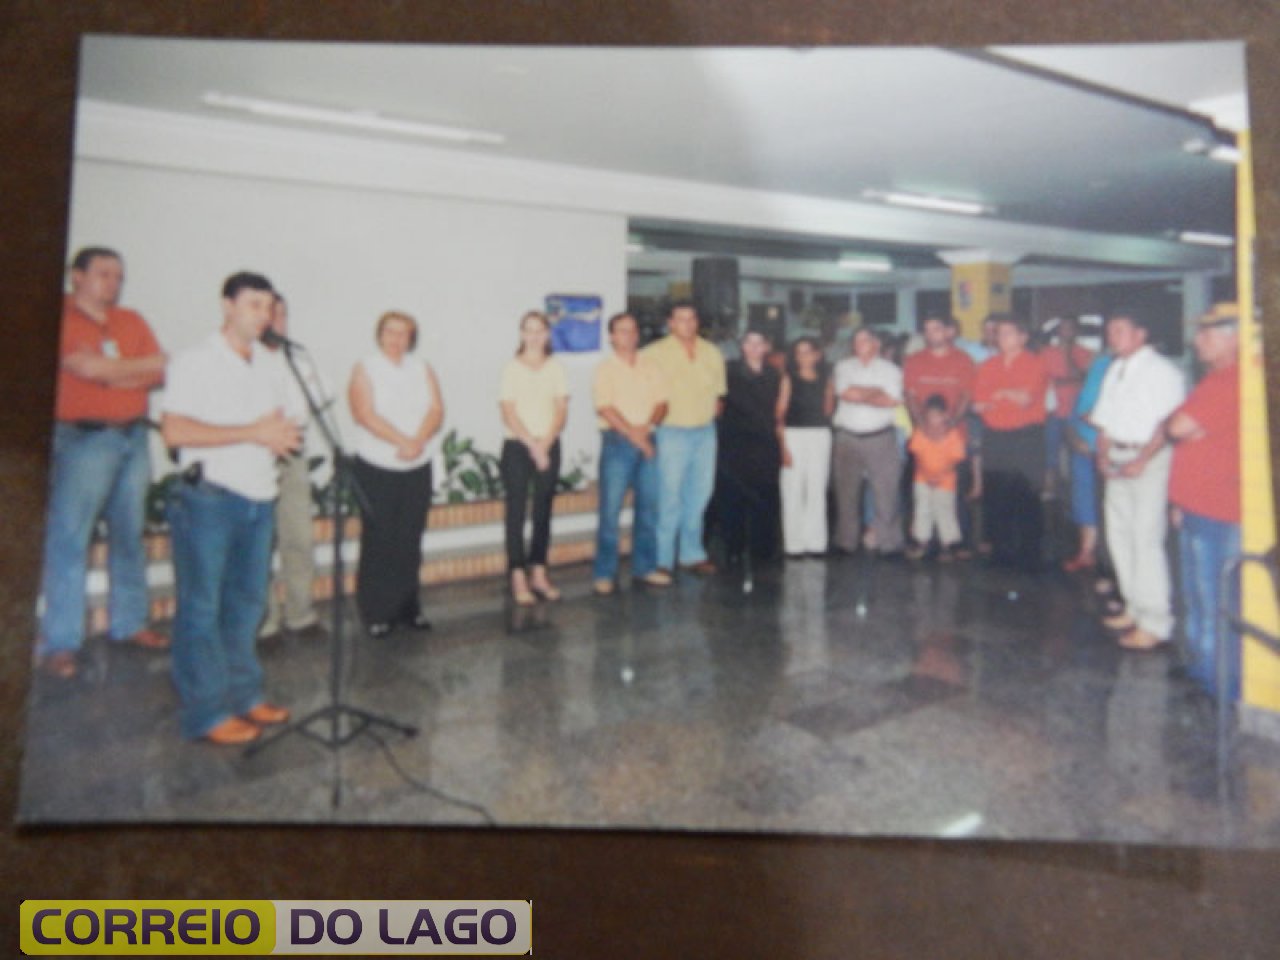 O então vice-prefeito Altair discorrendo aos familiares de Marino Carvalho da Silvaa respeito da homenagem prestada ao pioneiro. Década de 2000. Local - Rodoviária SH.